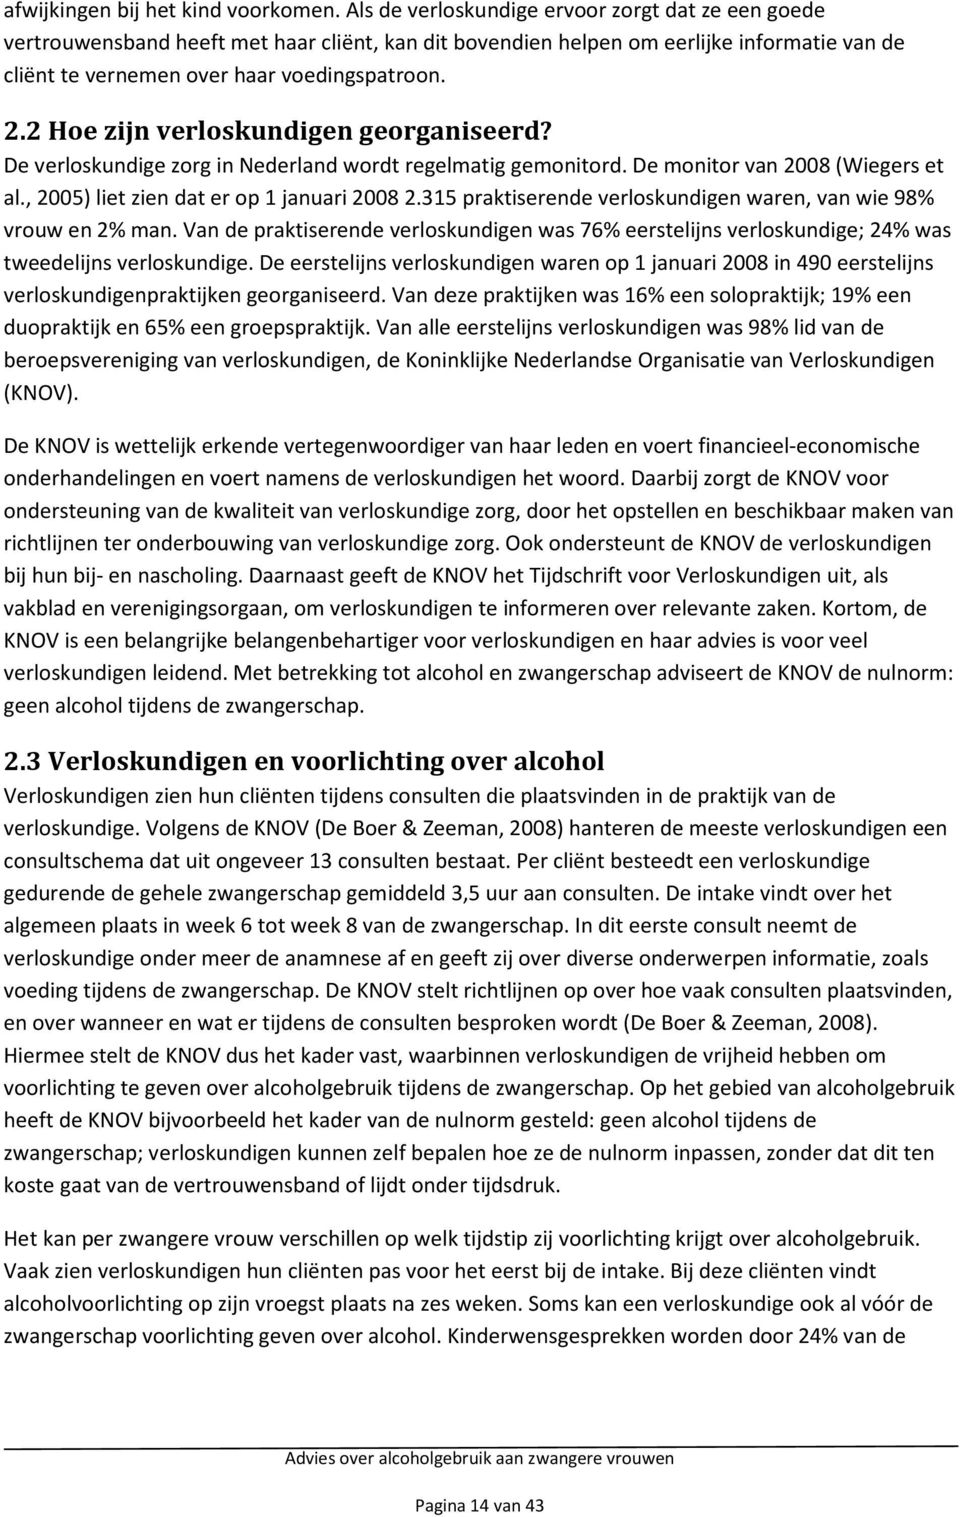 2 Hoe zijn verloskundigen georganiseerd? De verloskundige zorg in Nederland wordt regelmatig gemonitord. De monitor van 2008 (Wiegers et al., 2005) liet zien dat er op 1 januari 2008 2.